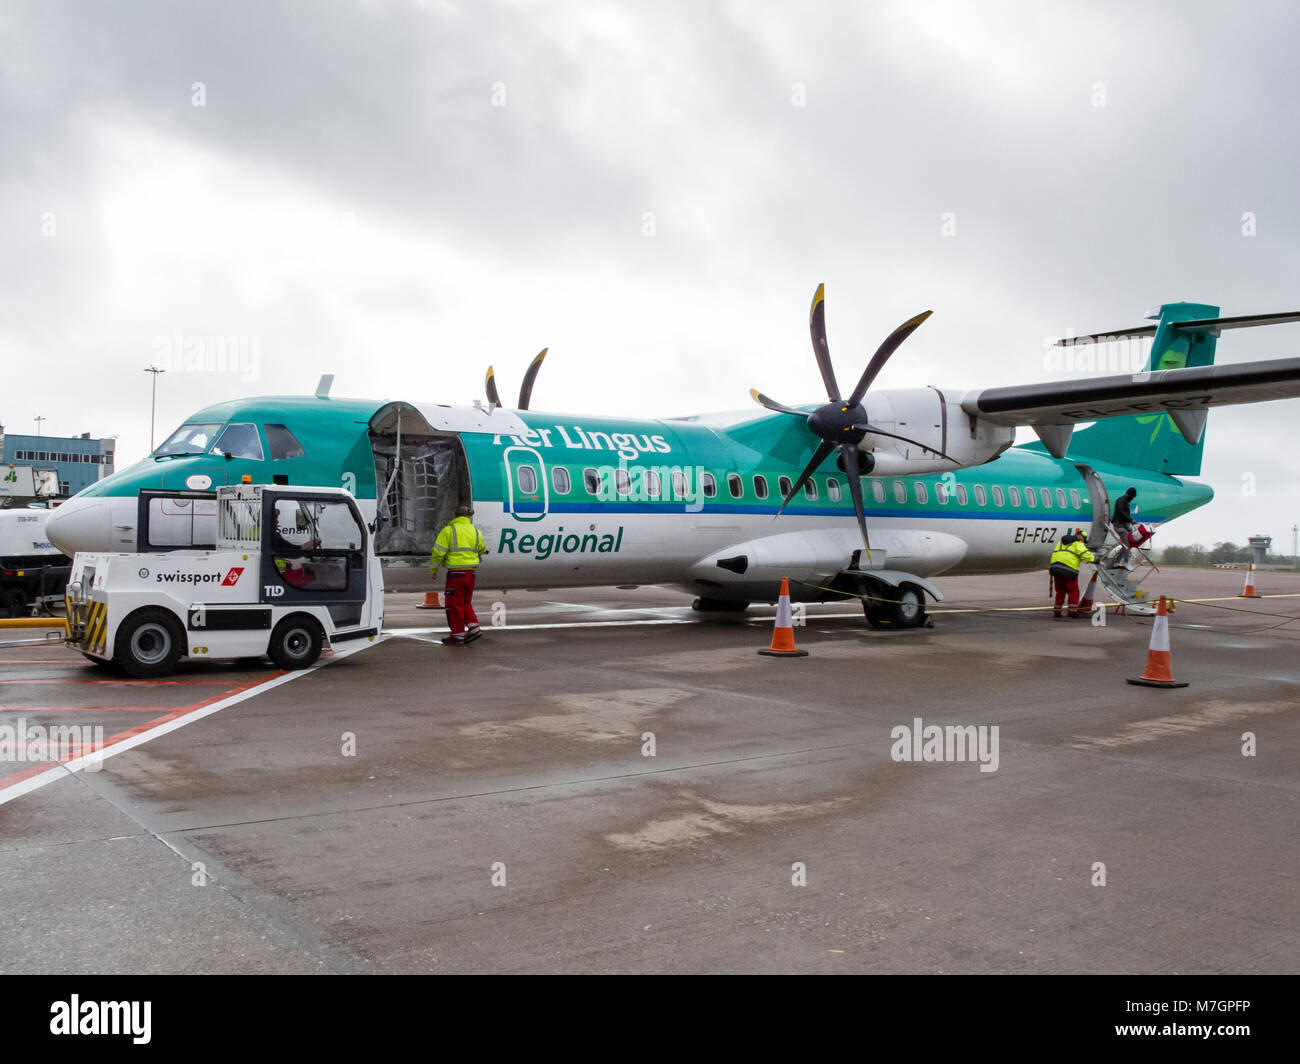 La compagnie aérienne irlandaise Stobart régional ATR 72-600 d'exploitation des aéronefs deux hélices Aer Lingus vols régionaux d'être chargé de passagers et de bagages Banque D'Images